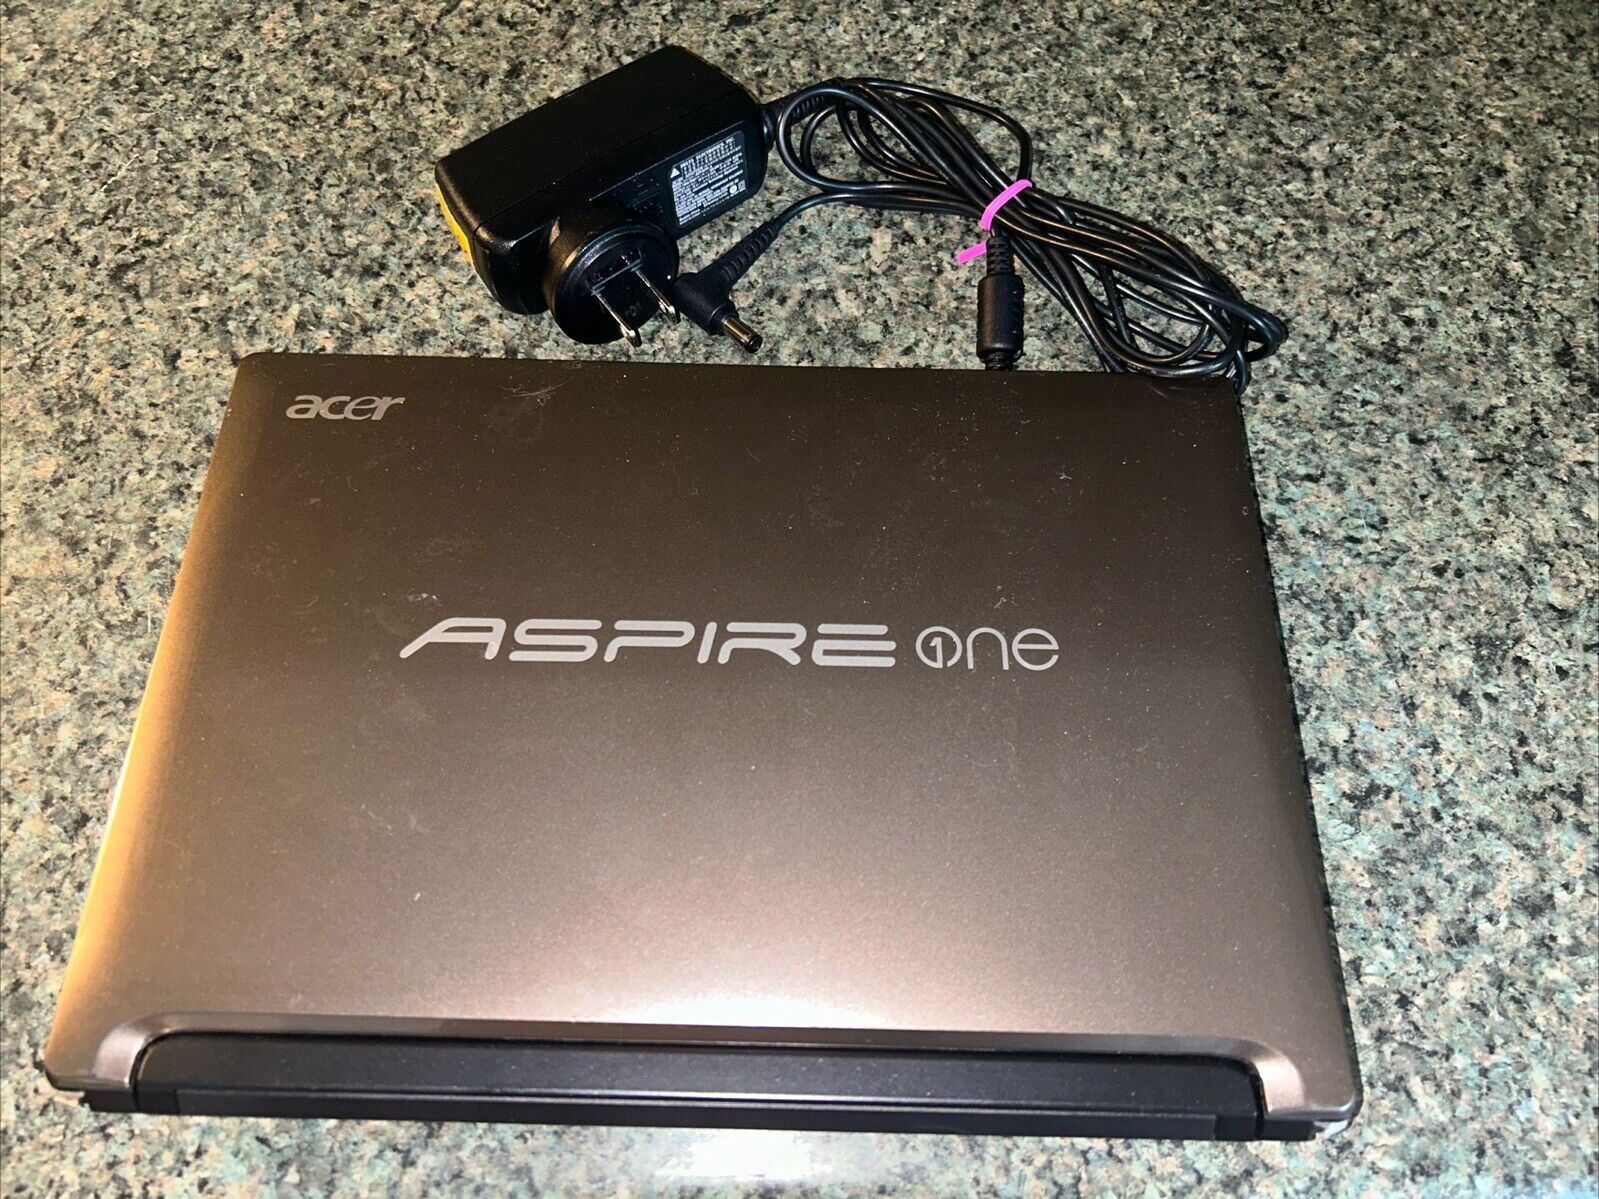 Acer Aspire One D255 Laptop Intel Atom N550 1.50GHz 2GB Ram 250GB HDD Win 7 READ